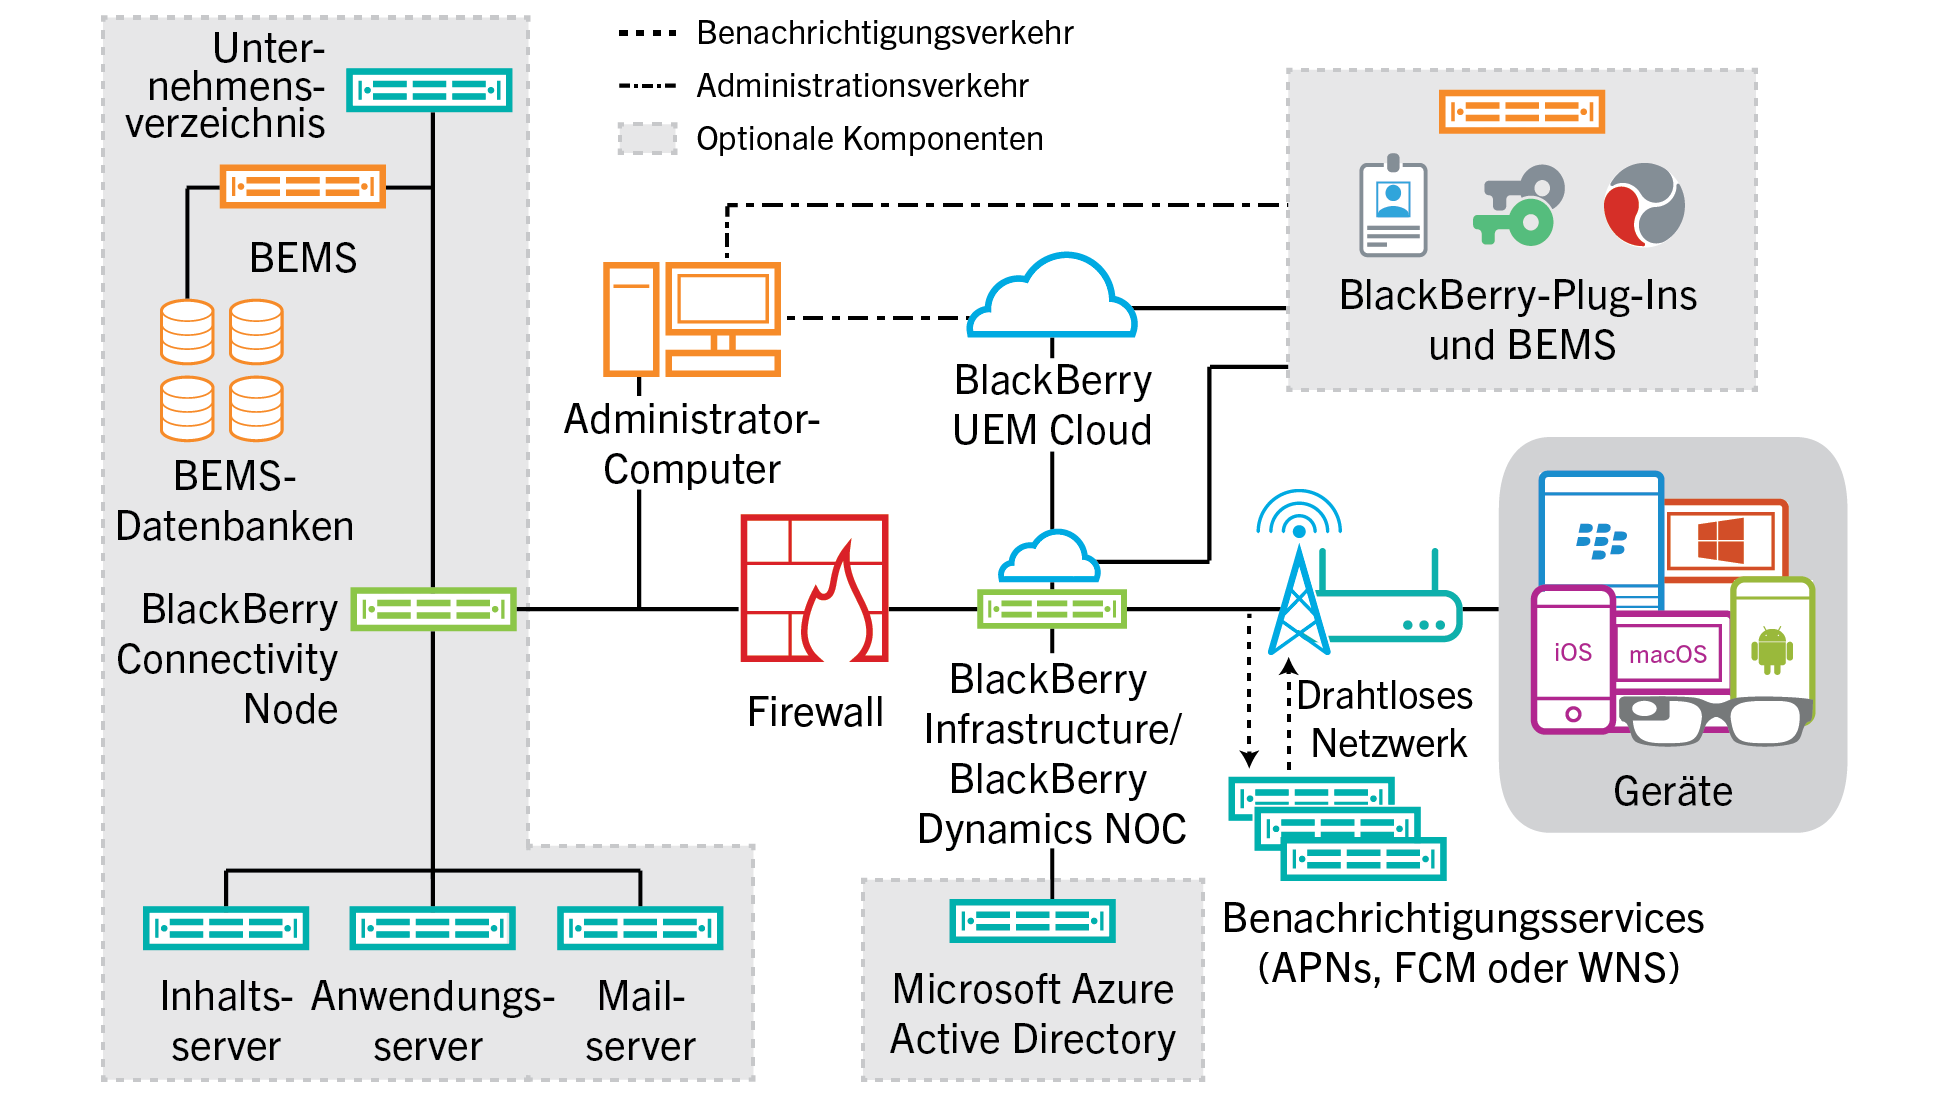 Das Diagramm zeigt die Komponenten an, die in BlackBerry UEM Cloud verwendet werden.